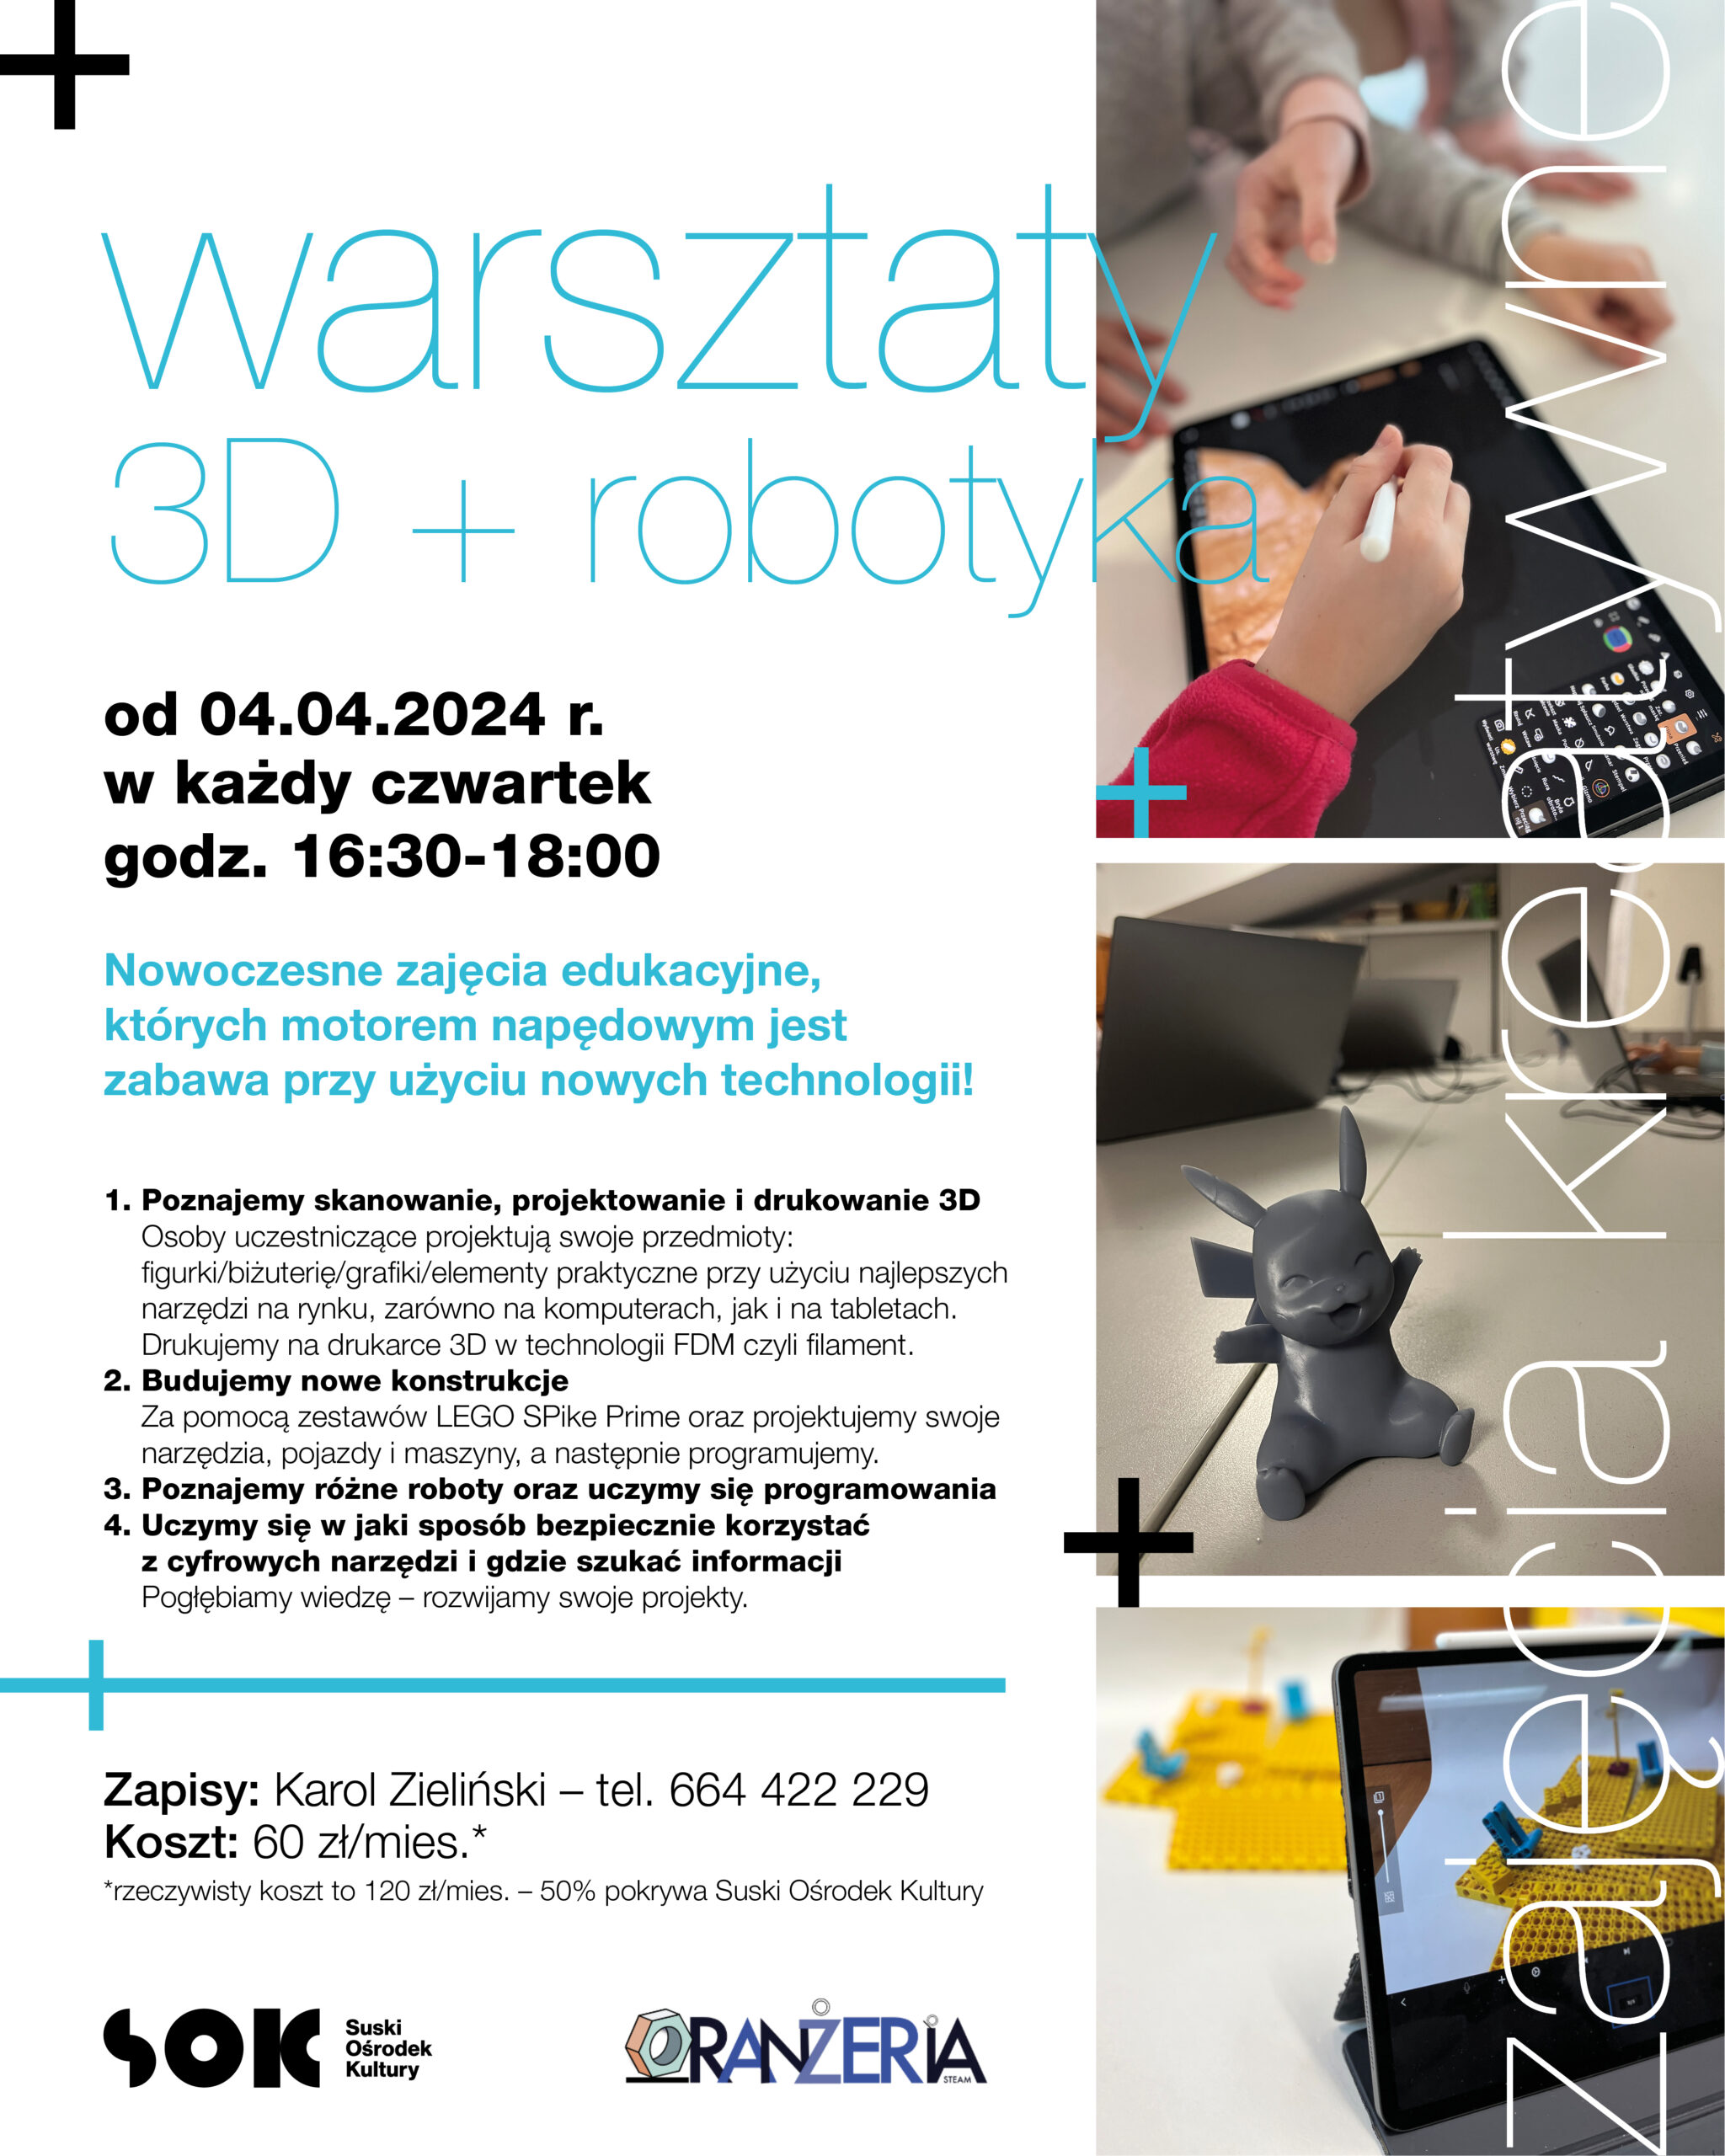 Warsztaty 3D + robotyka